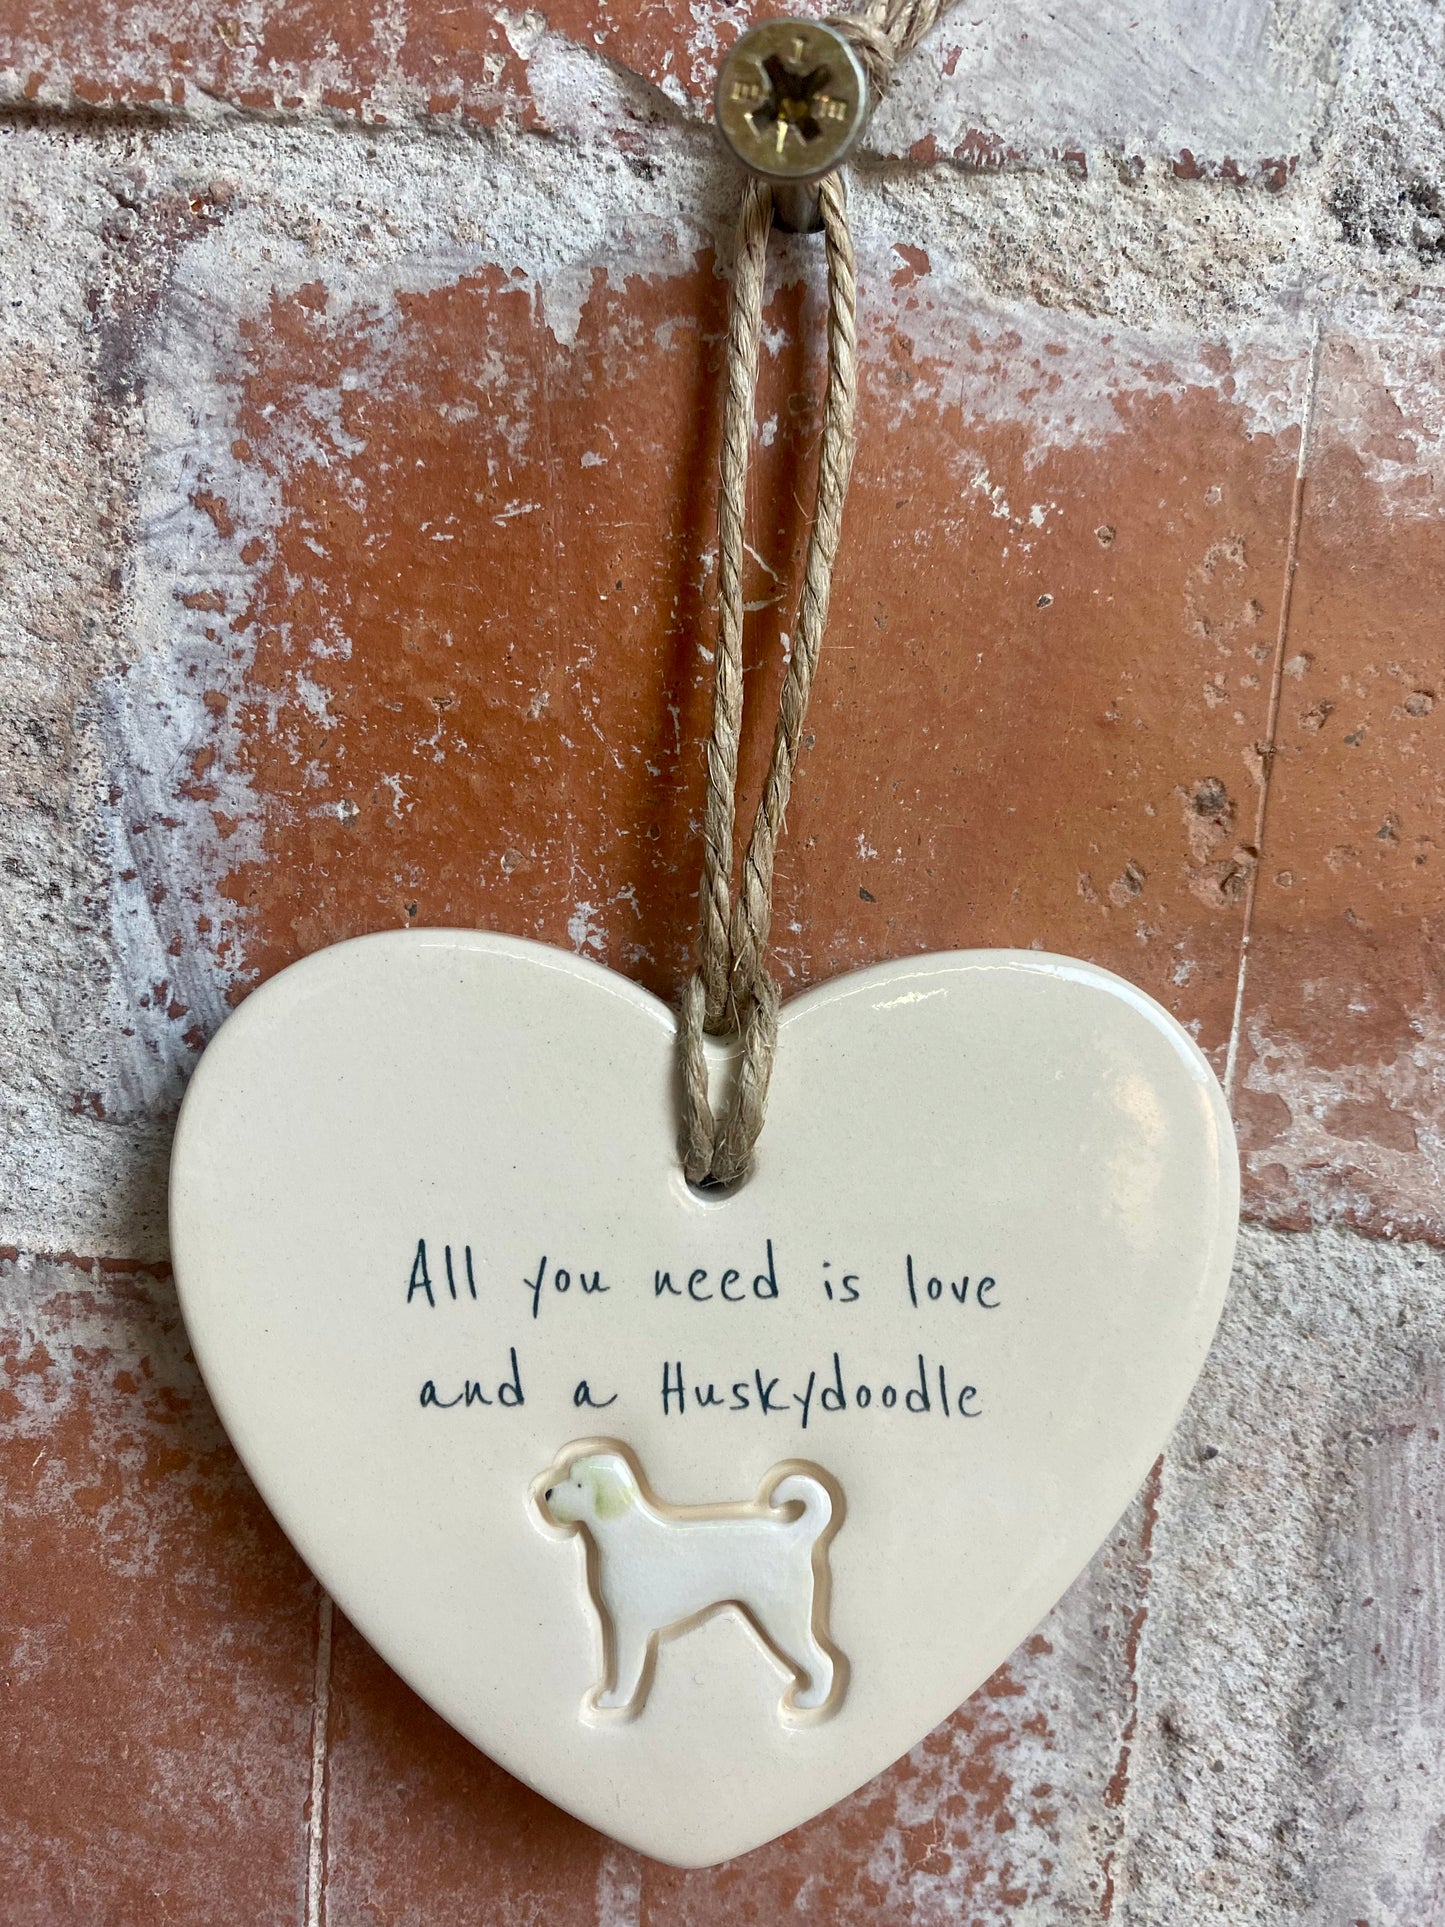 Huskydoodle ceramic heart